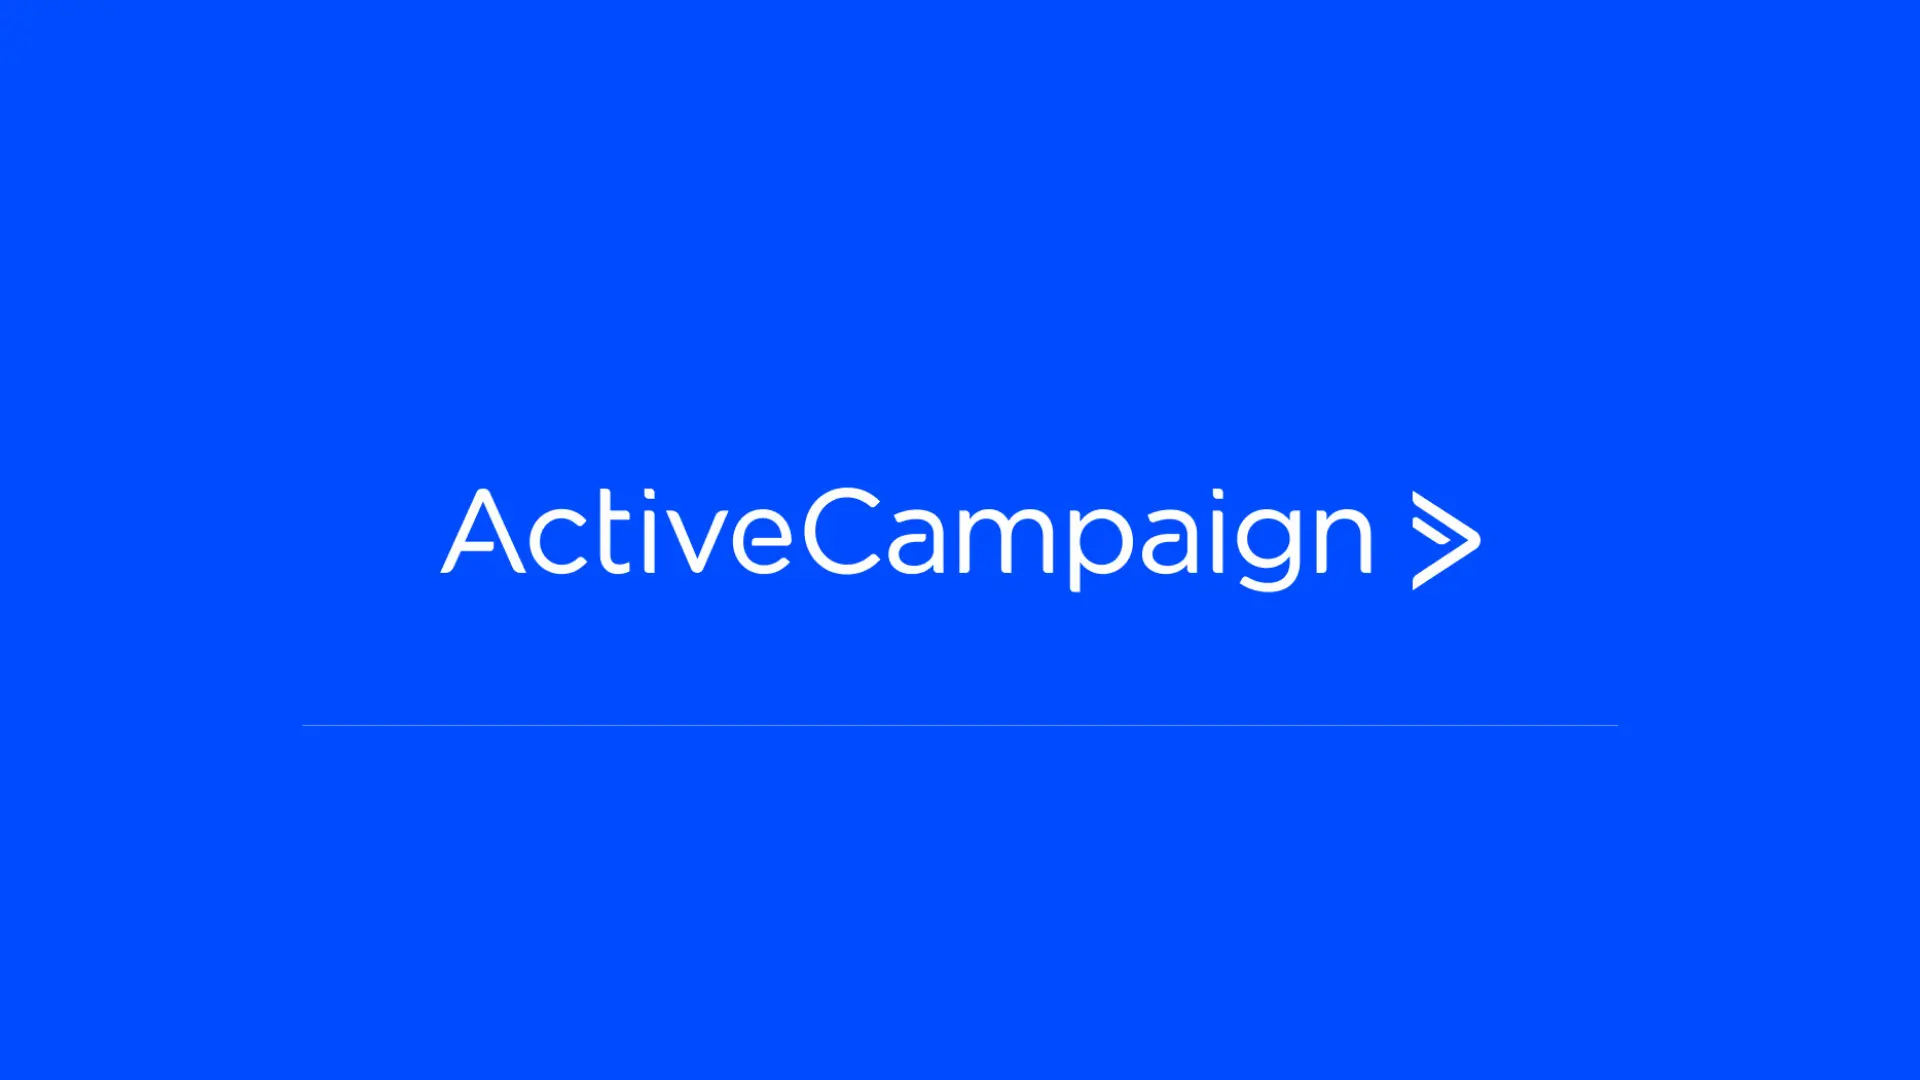 ActiveCampaign brand